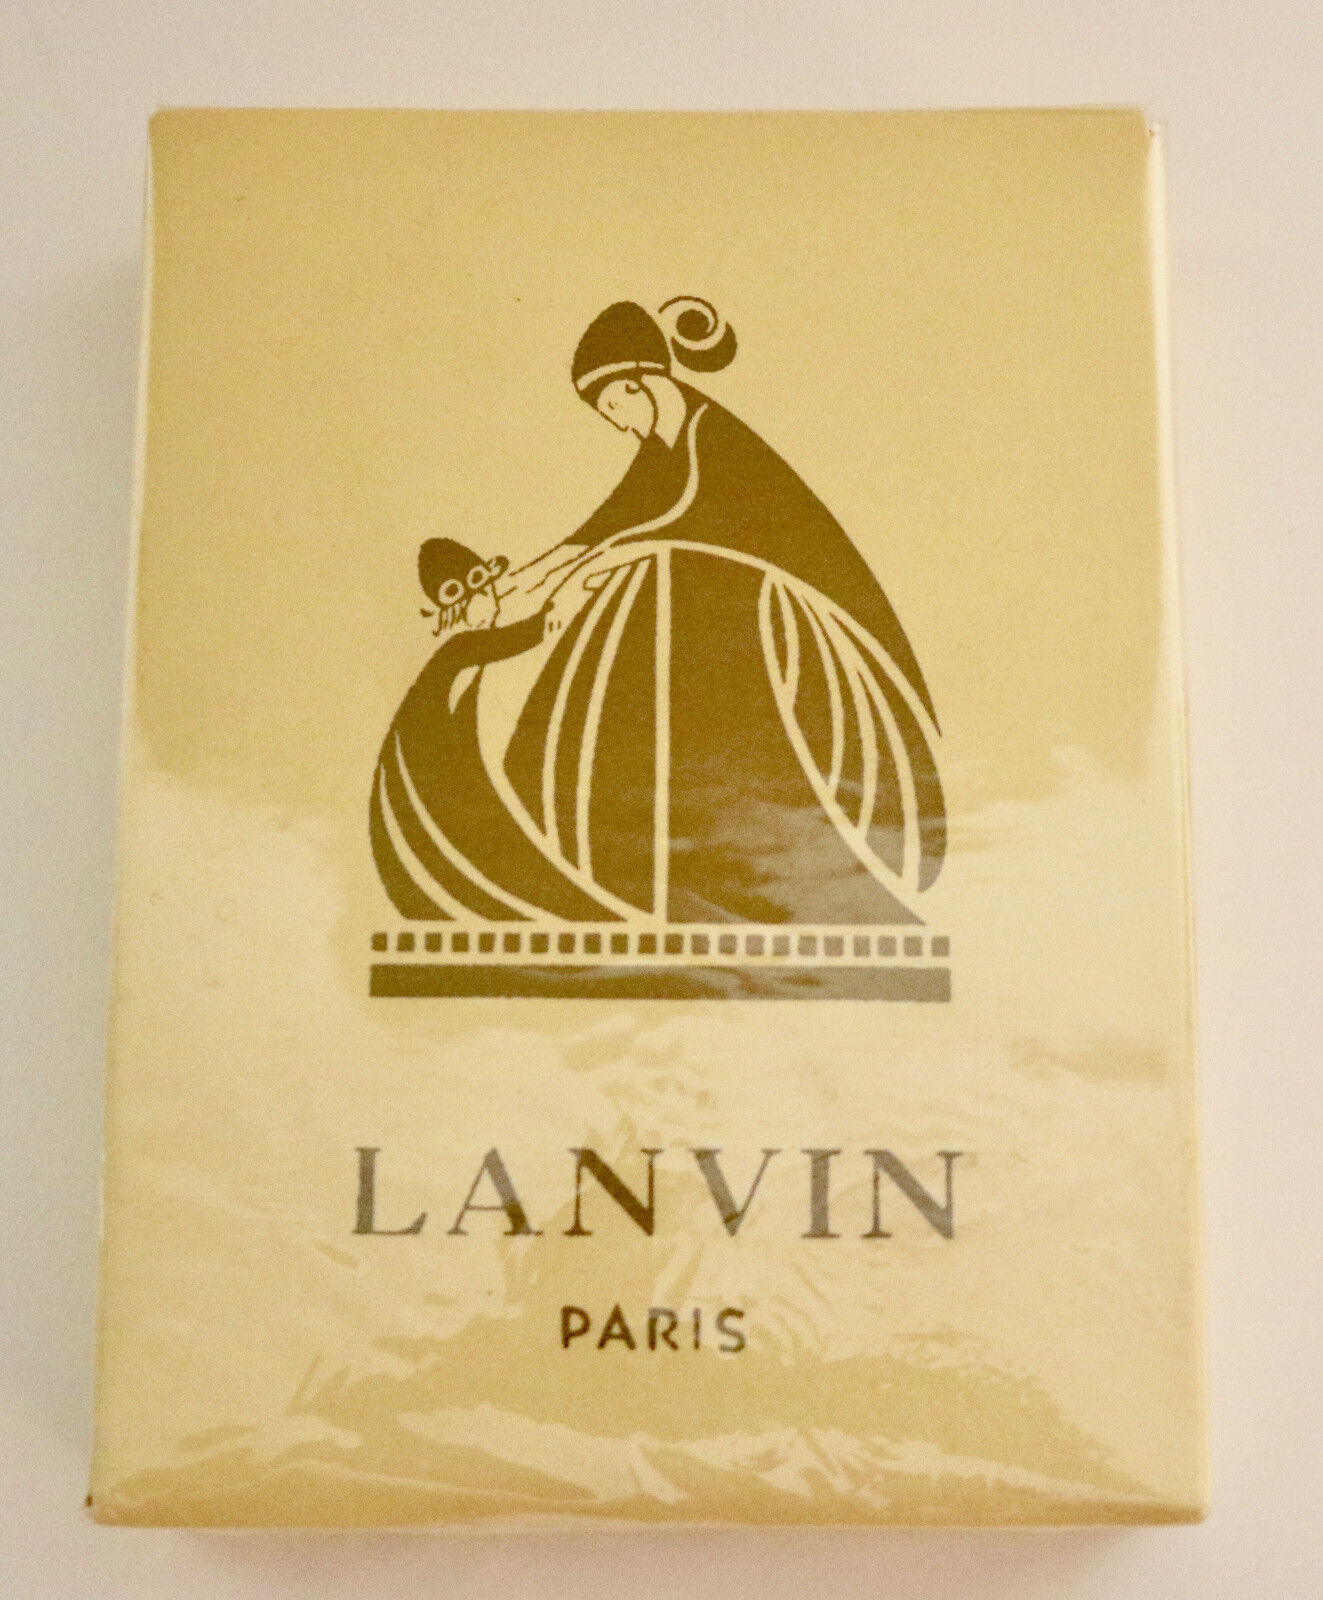 LANVIN ARPEGE parfum rare boxed set